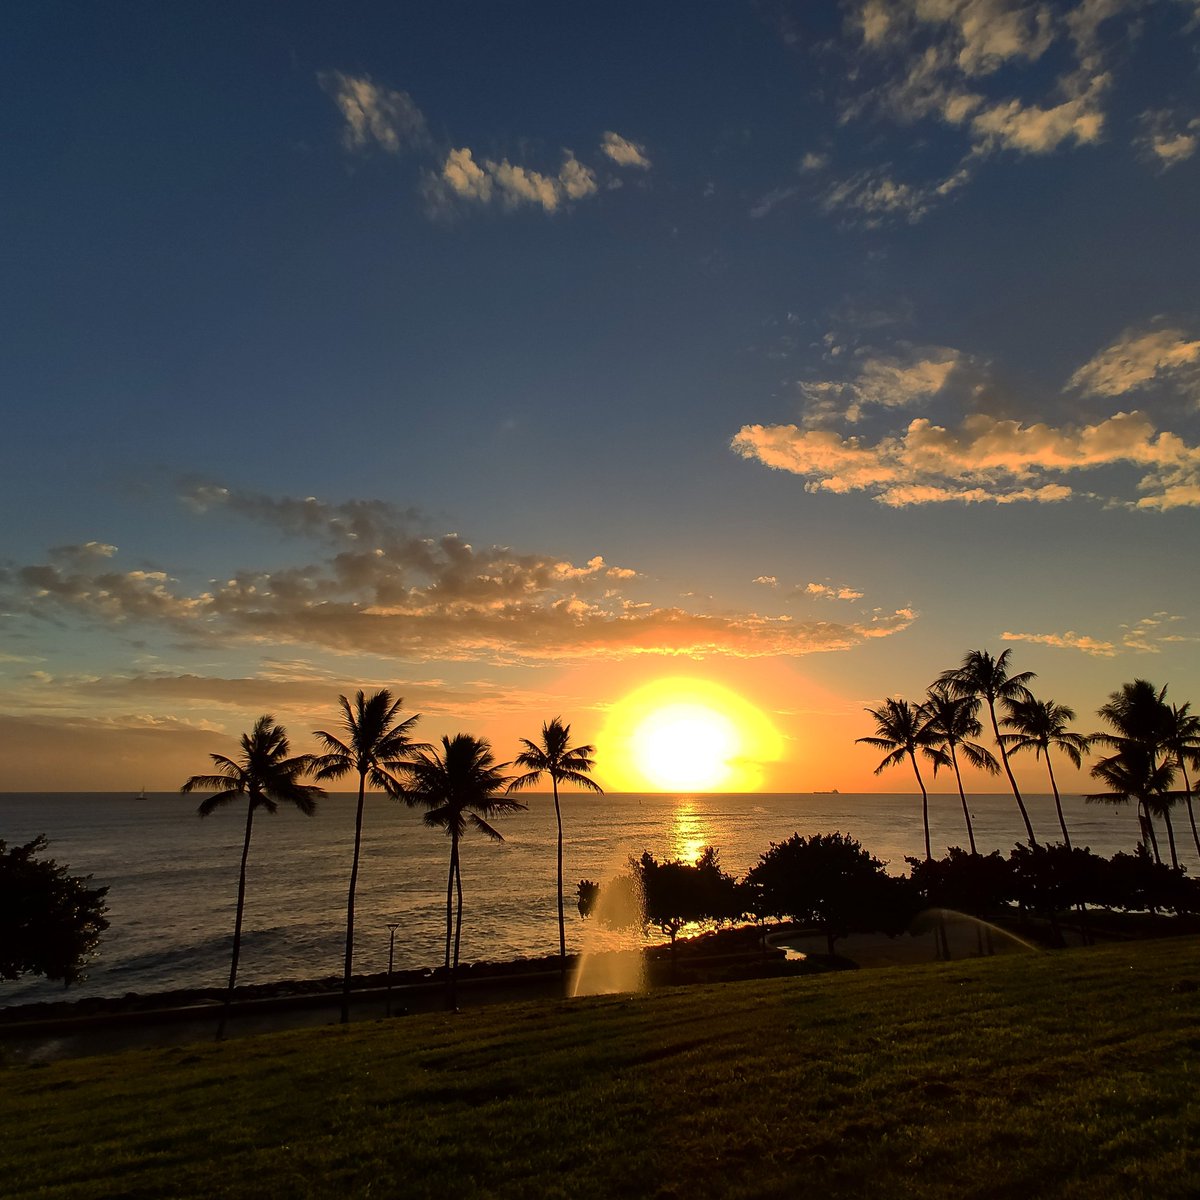 Breezy Hawaii 最新のハワイ情報 ニュース 写真をアップ ハワイのサンセット 隠れた穴場スポット カカアコ ウォーターフロント パーク ハワイ ハワイ旅行 ハワイ夕日